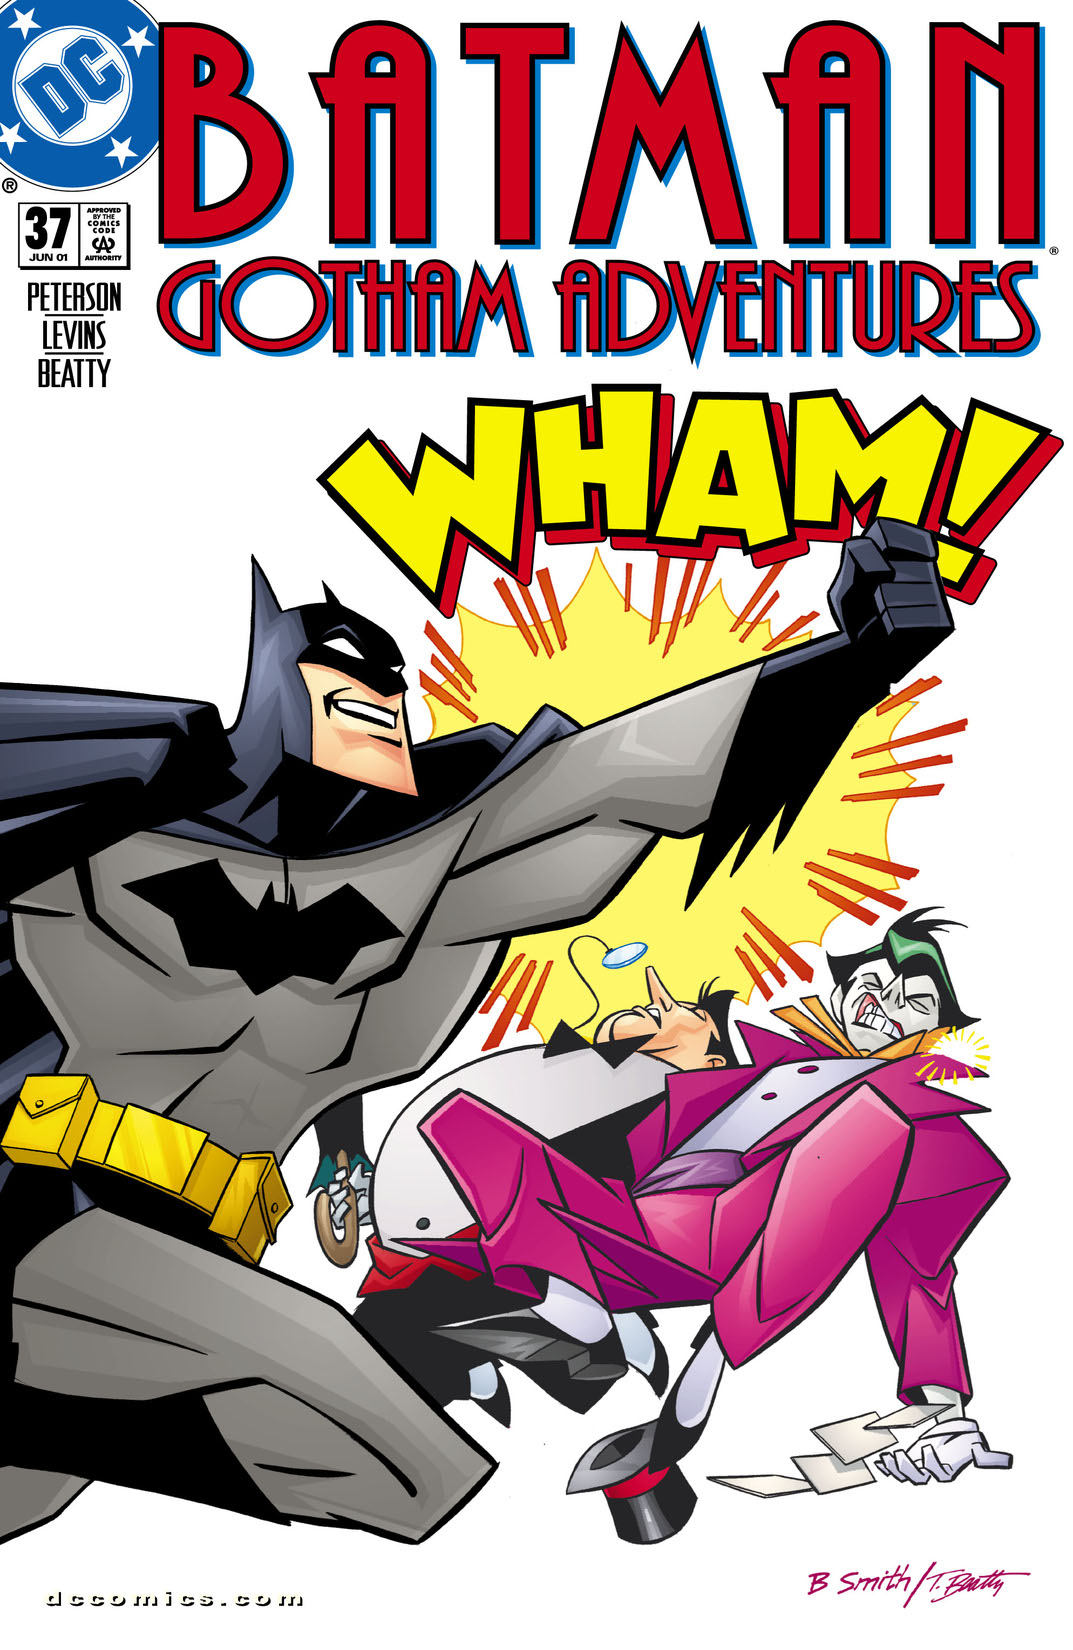 Batman: Gotham Adventures #37 preview images